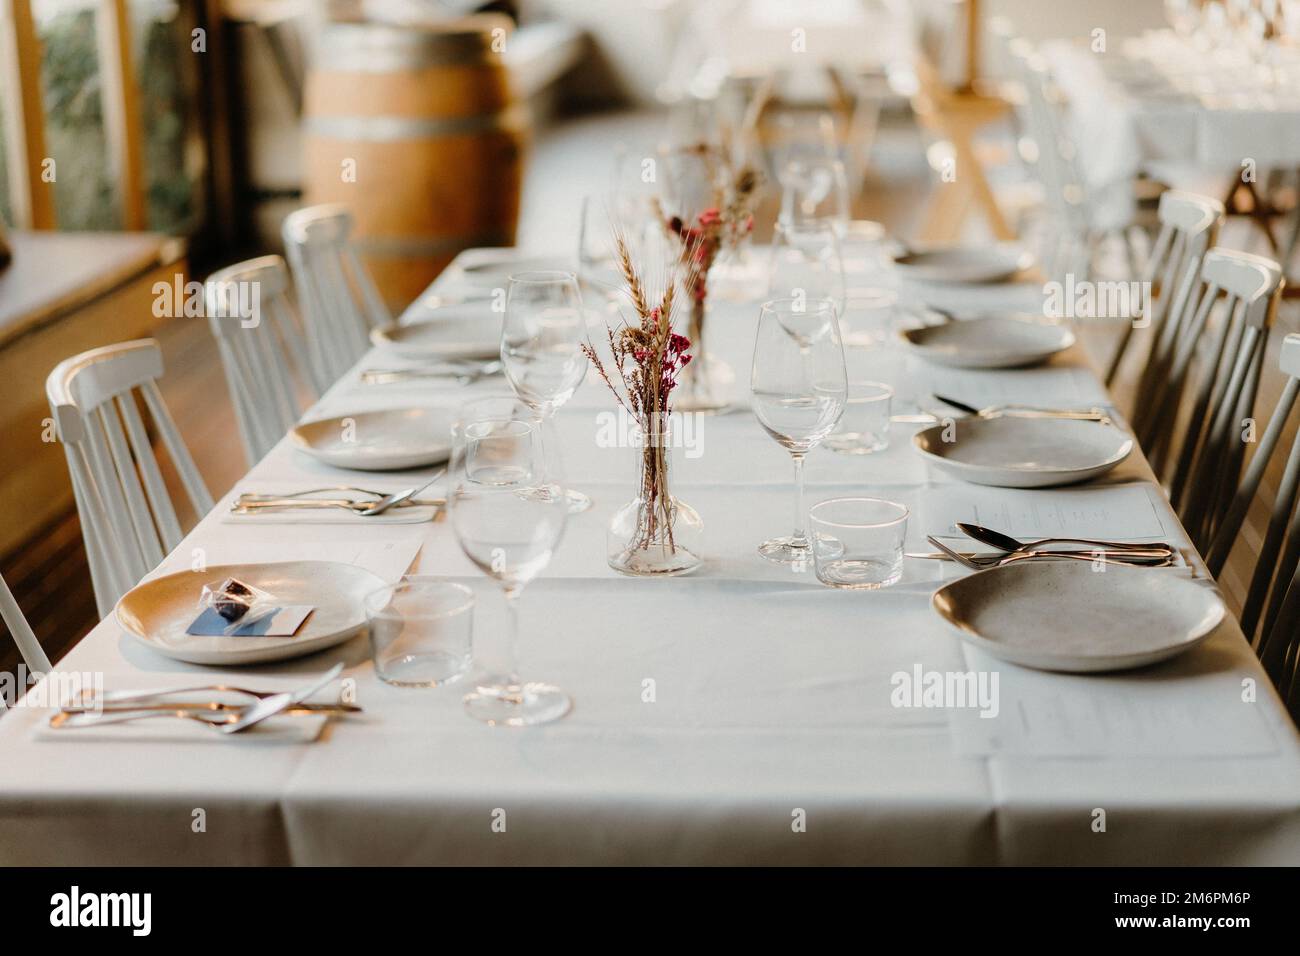 simple minimalist wedding table set up Stock Photo